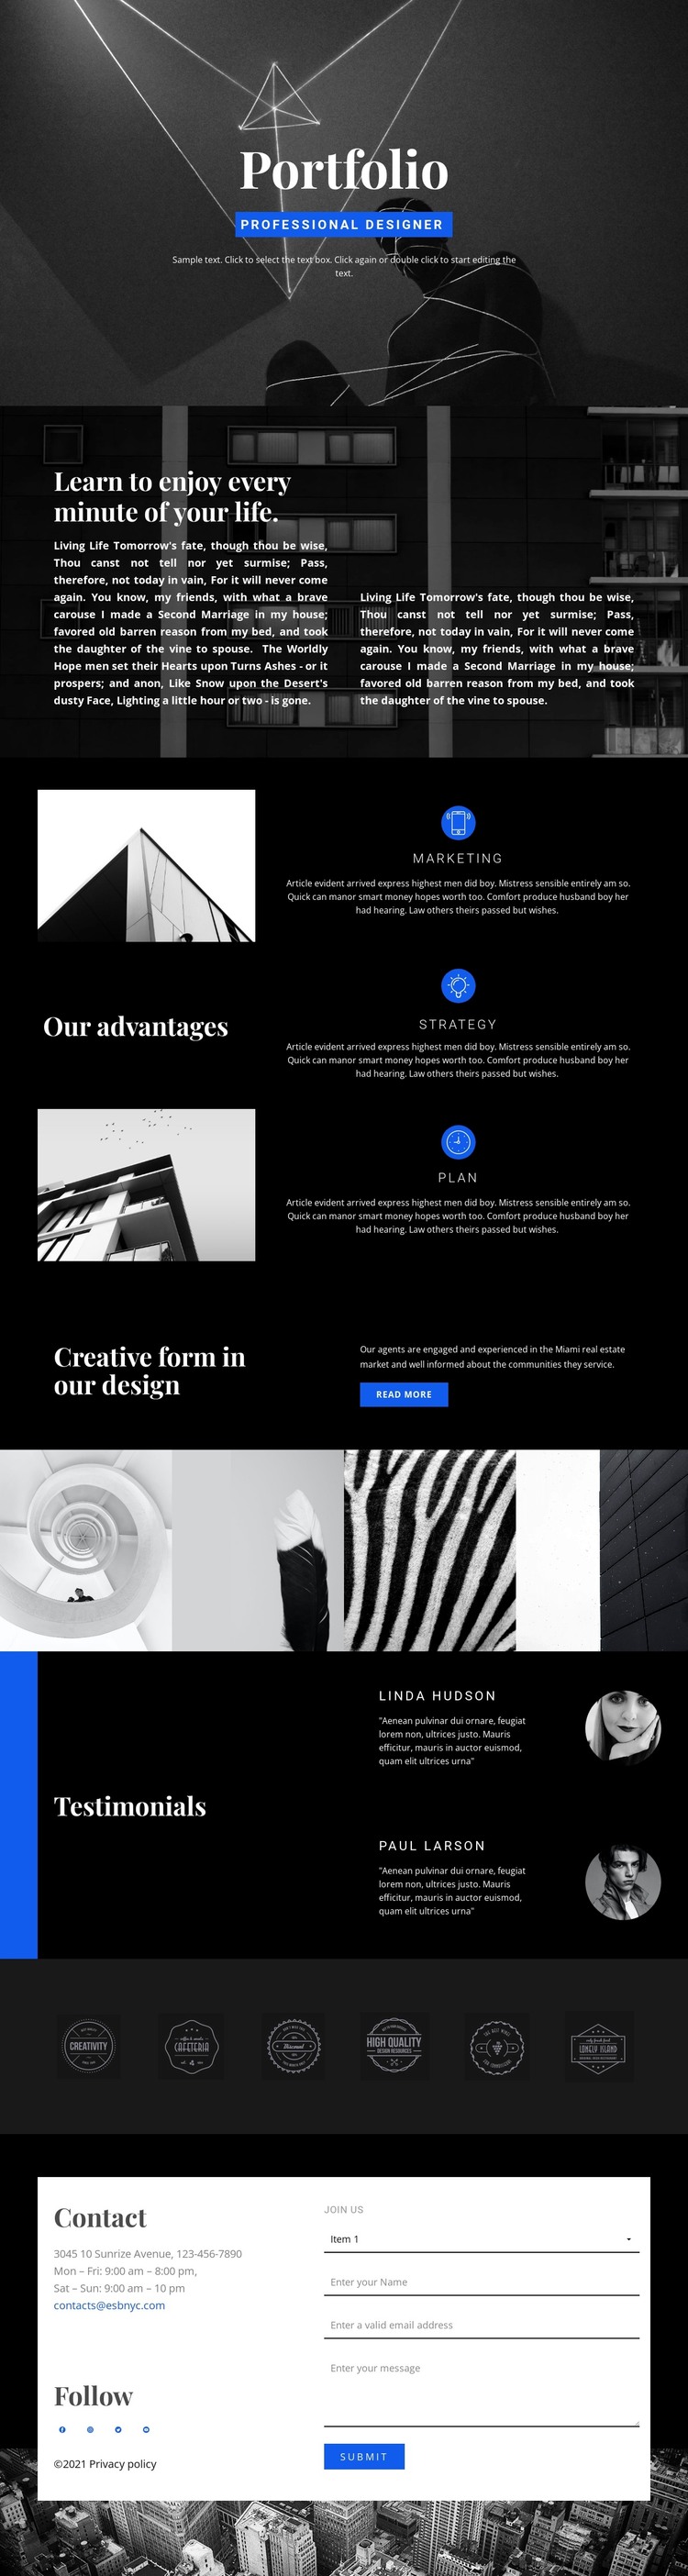 Fashion Designer Portfolio Web Design